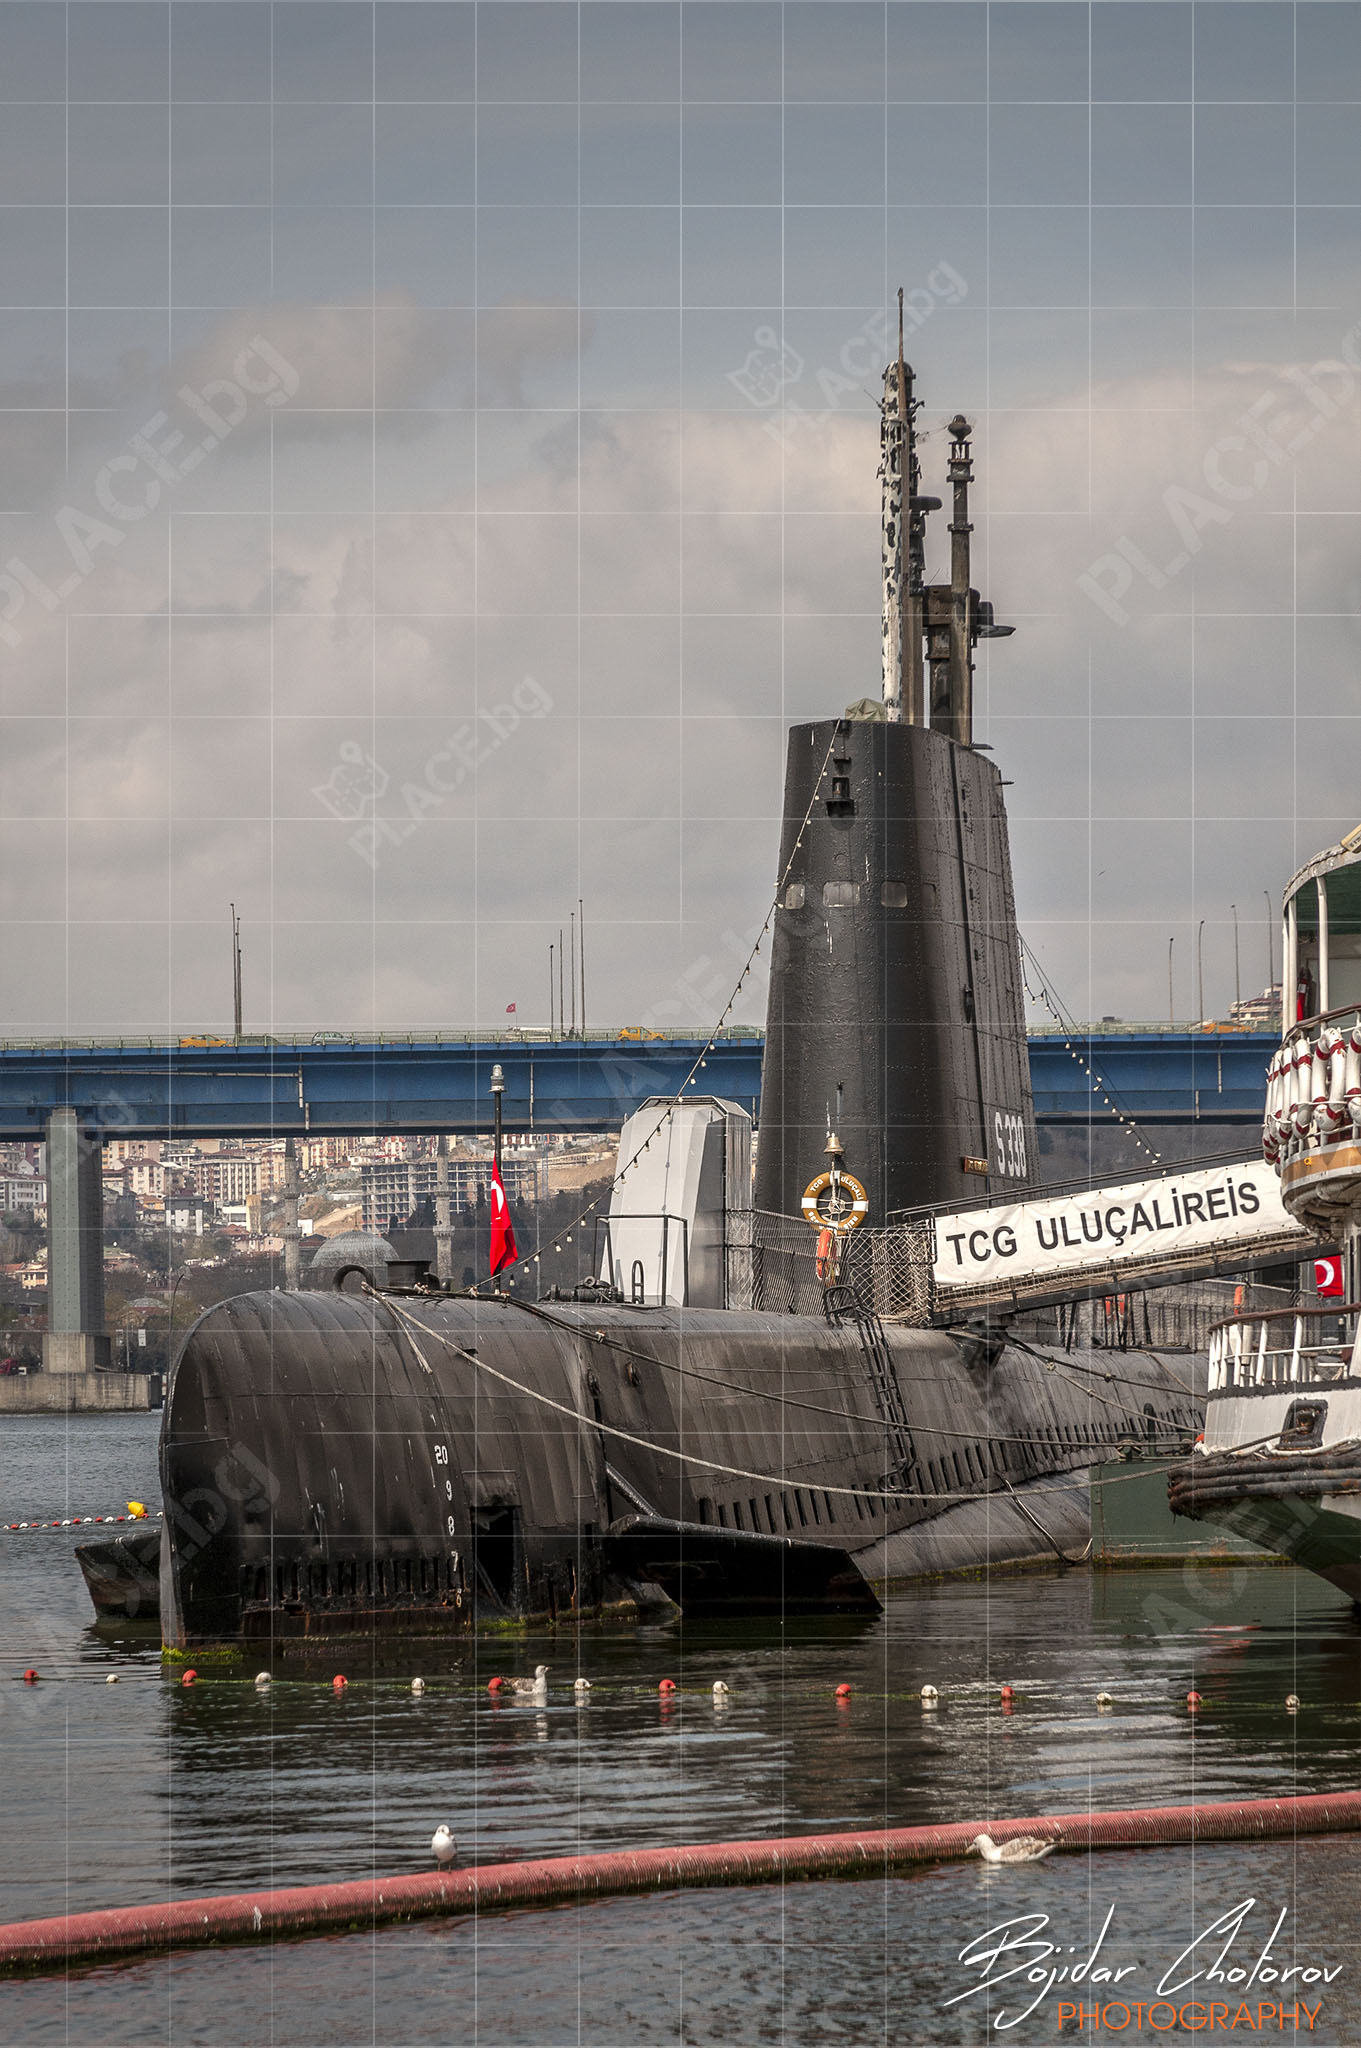 Подводница-музей TCG Uluçalireis (S-338) (DSC8333)